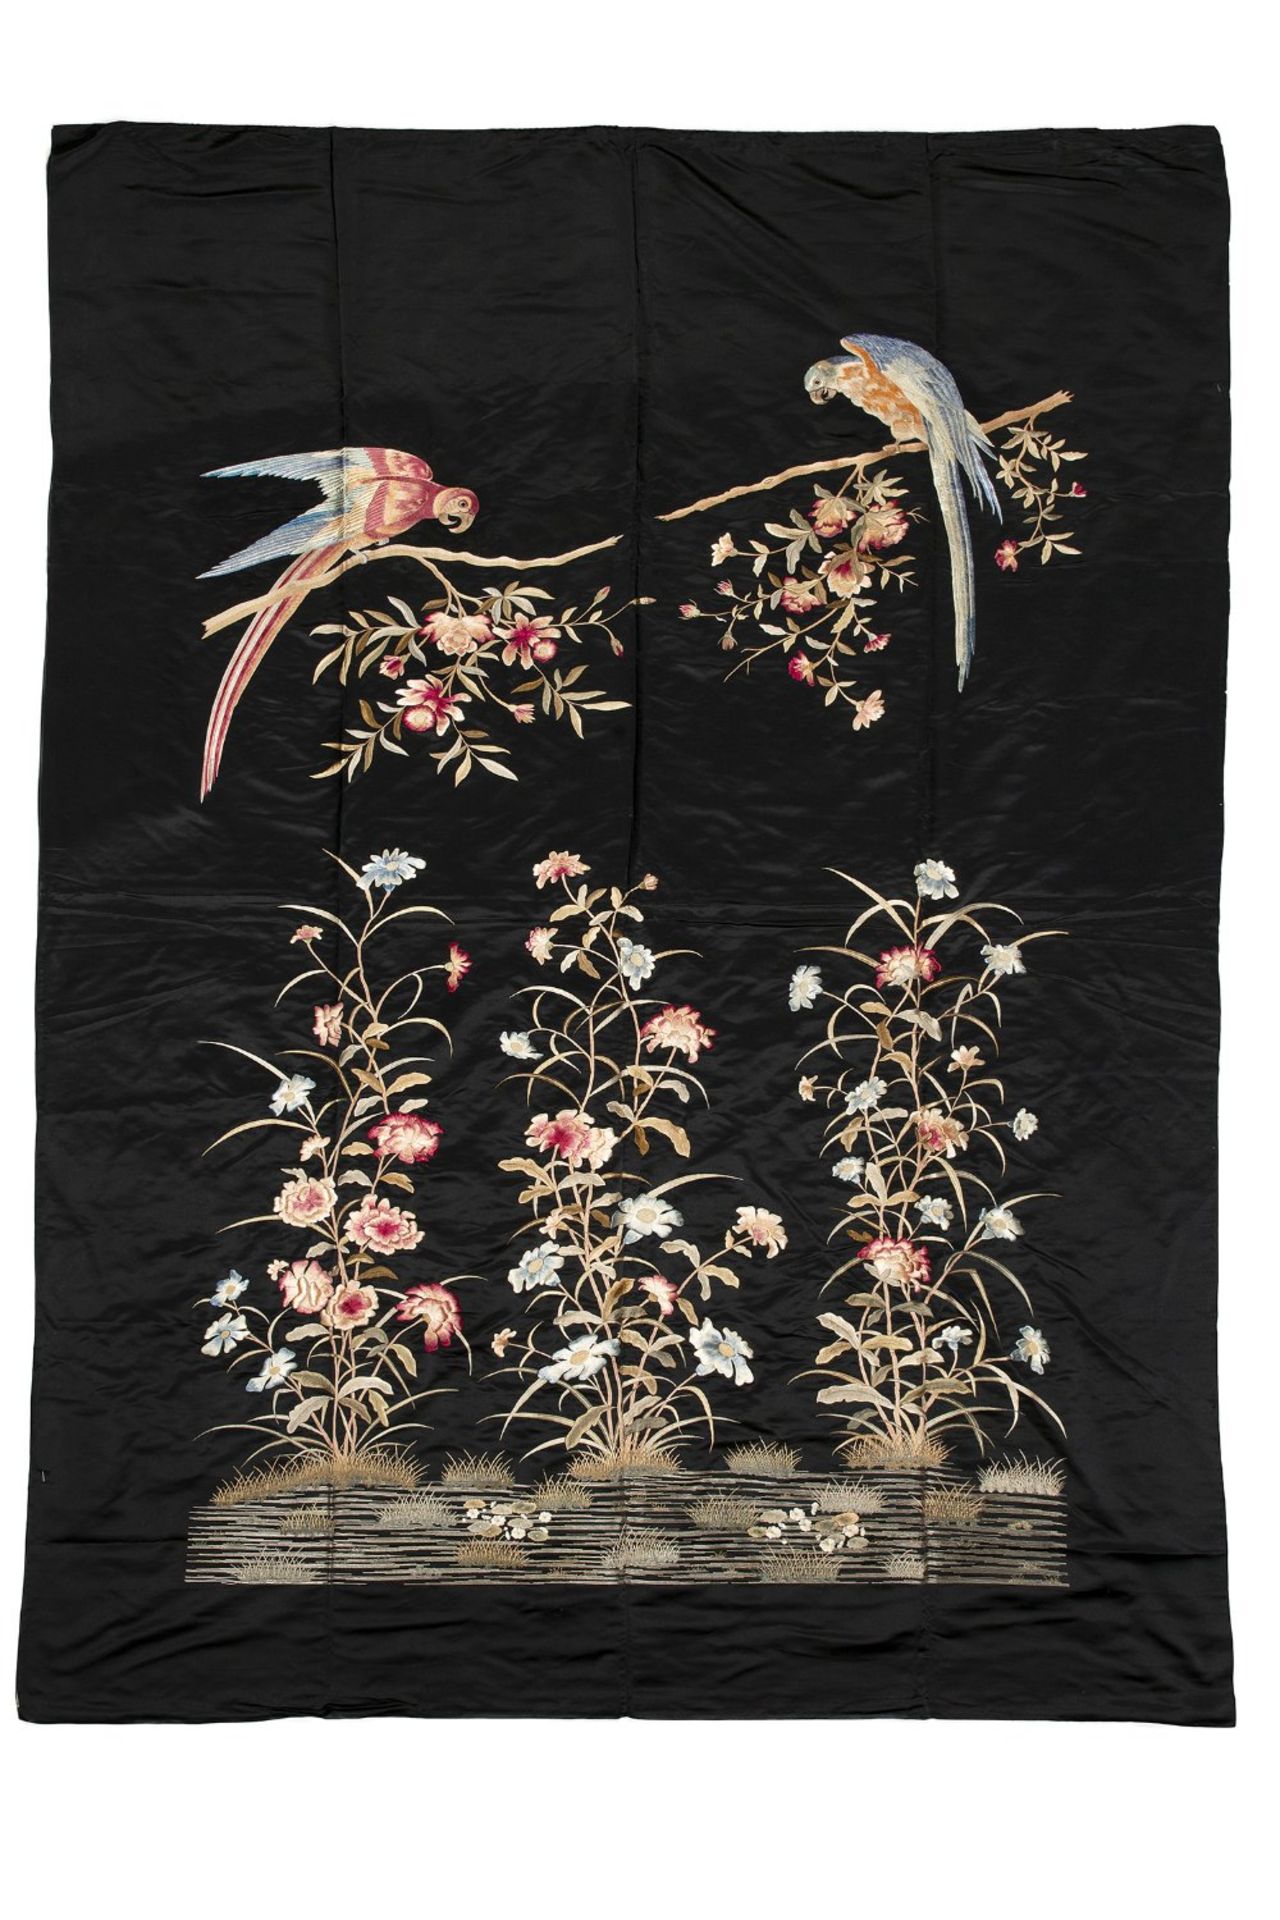 GRANDE TENTURE VERTICALE en soie noire, à décor, brodé aux fils polychromes, de deux perroquets